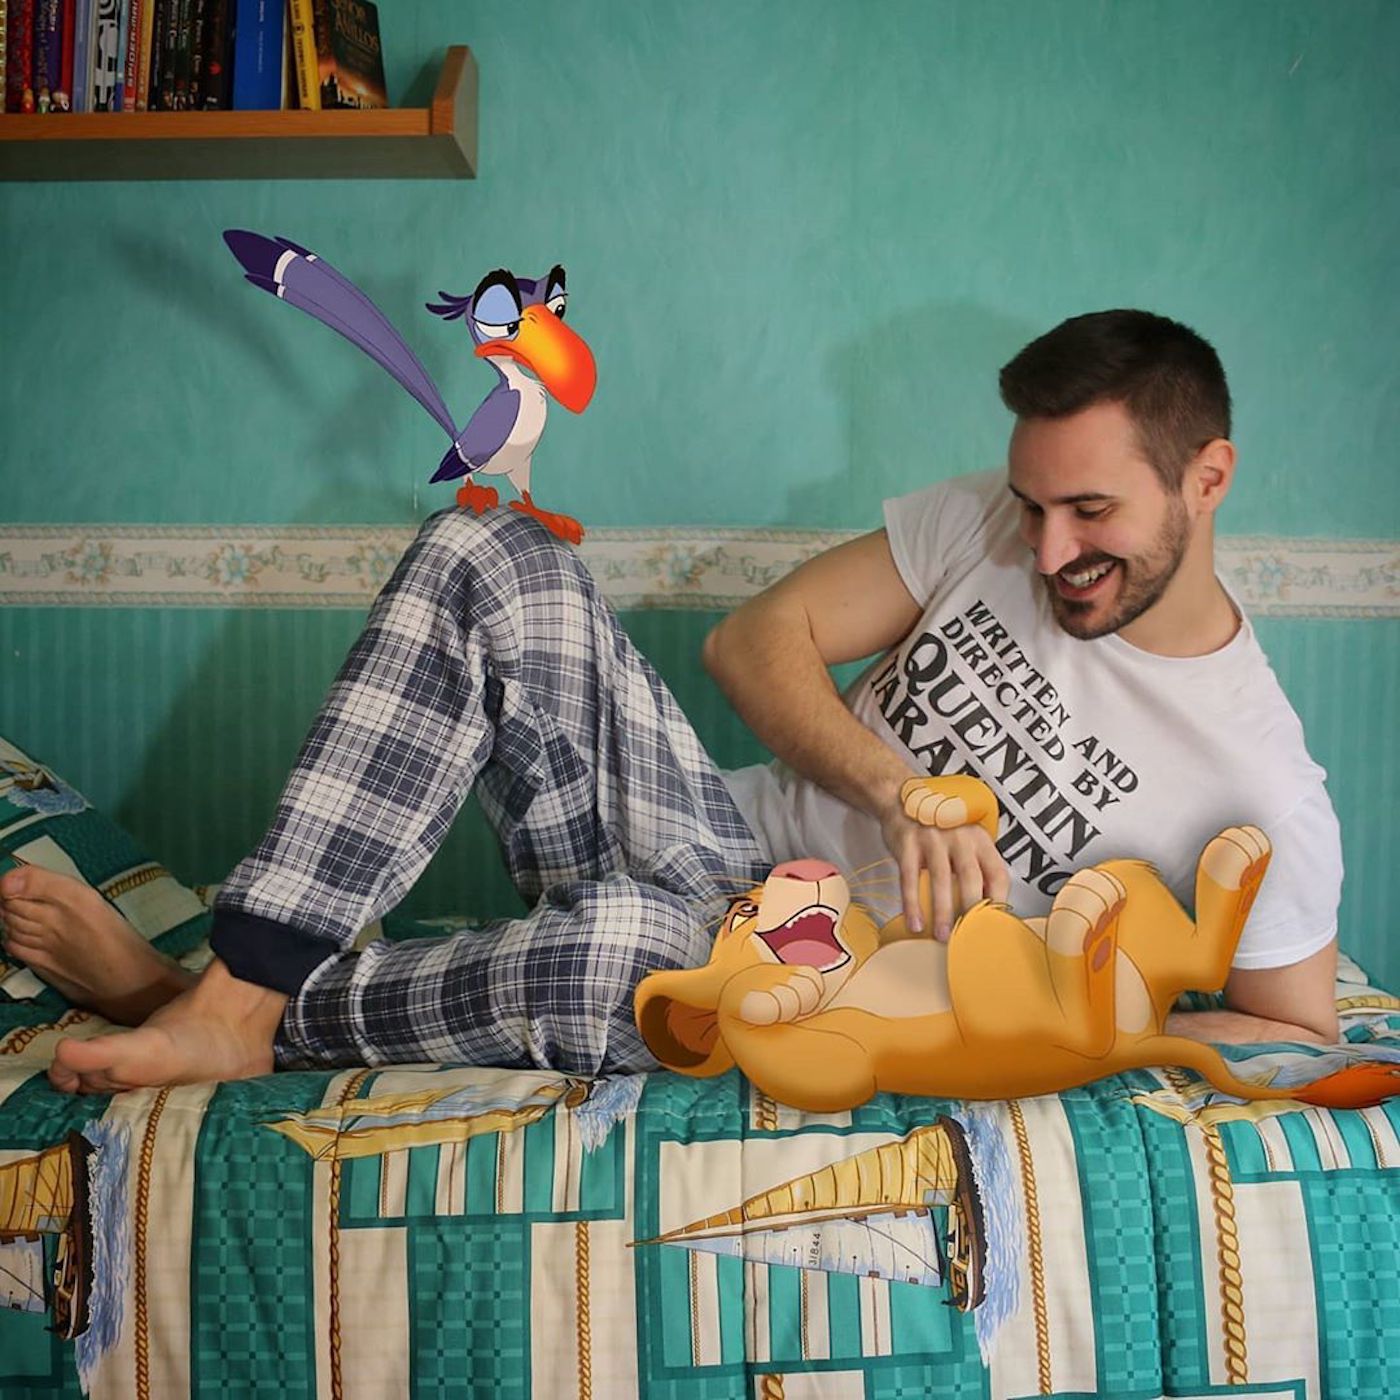 Le créatif Samuel MB incruste les personnages Disney dans son quotidien avec talent et humour